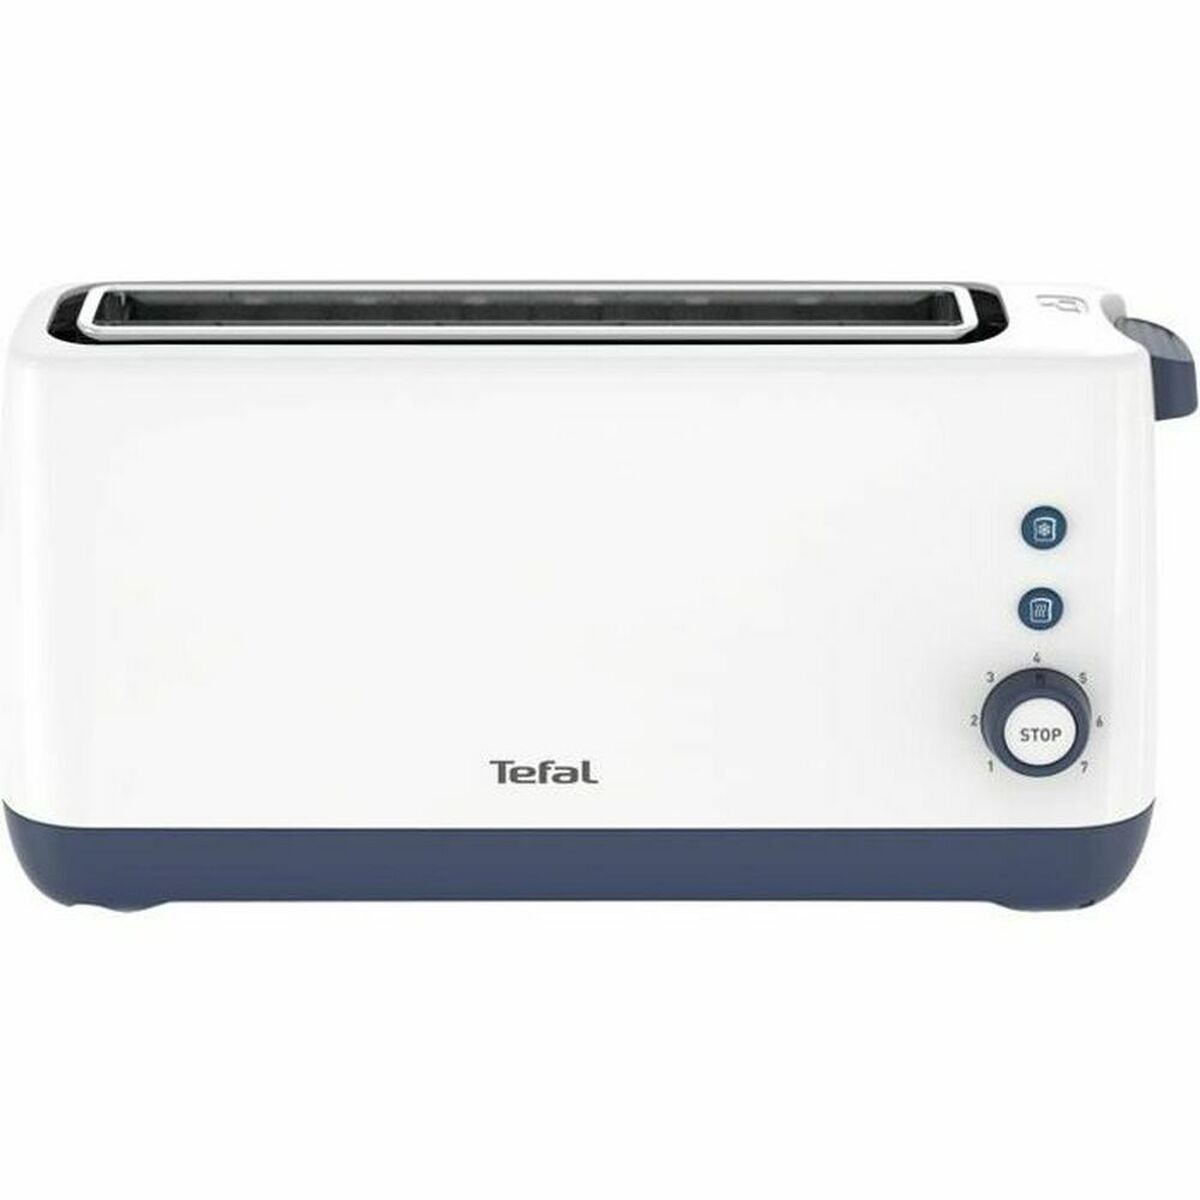 Toaster SEB TL302110 850 W White 850 W